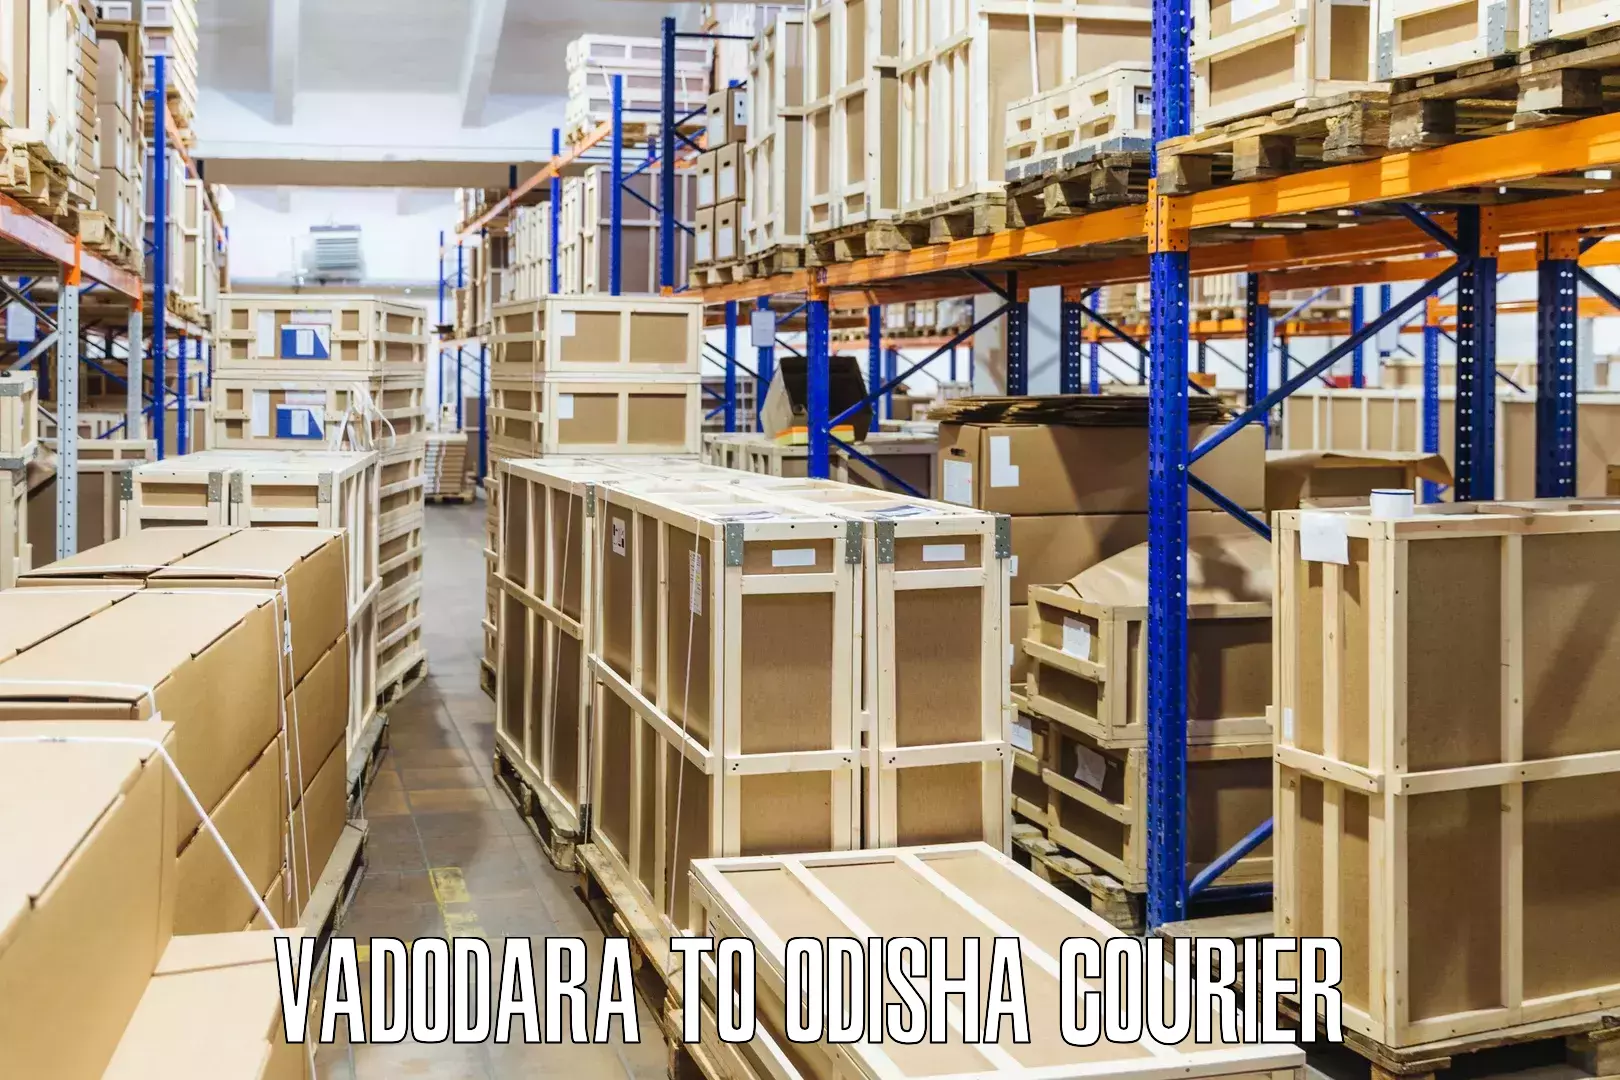 Nationwide parcel services Vadodara to Boipariguda